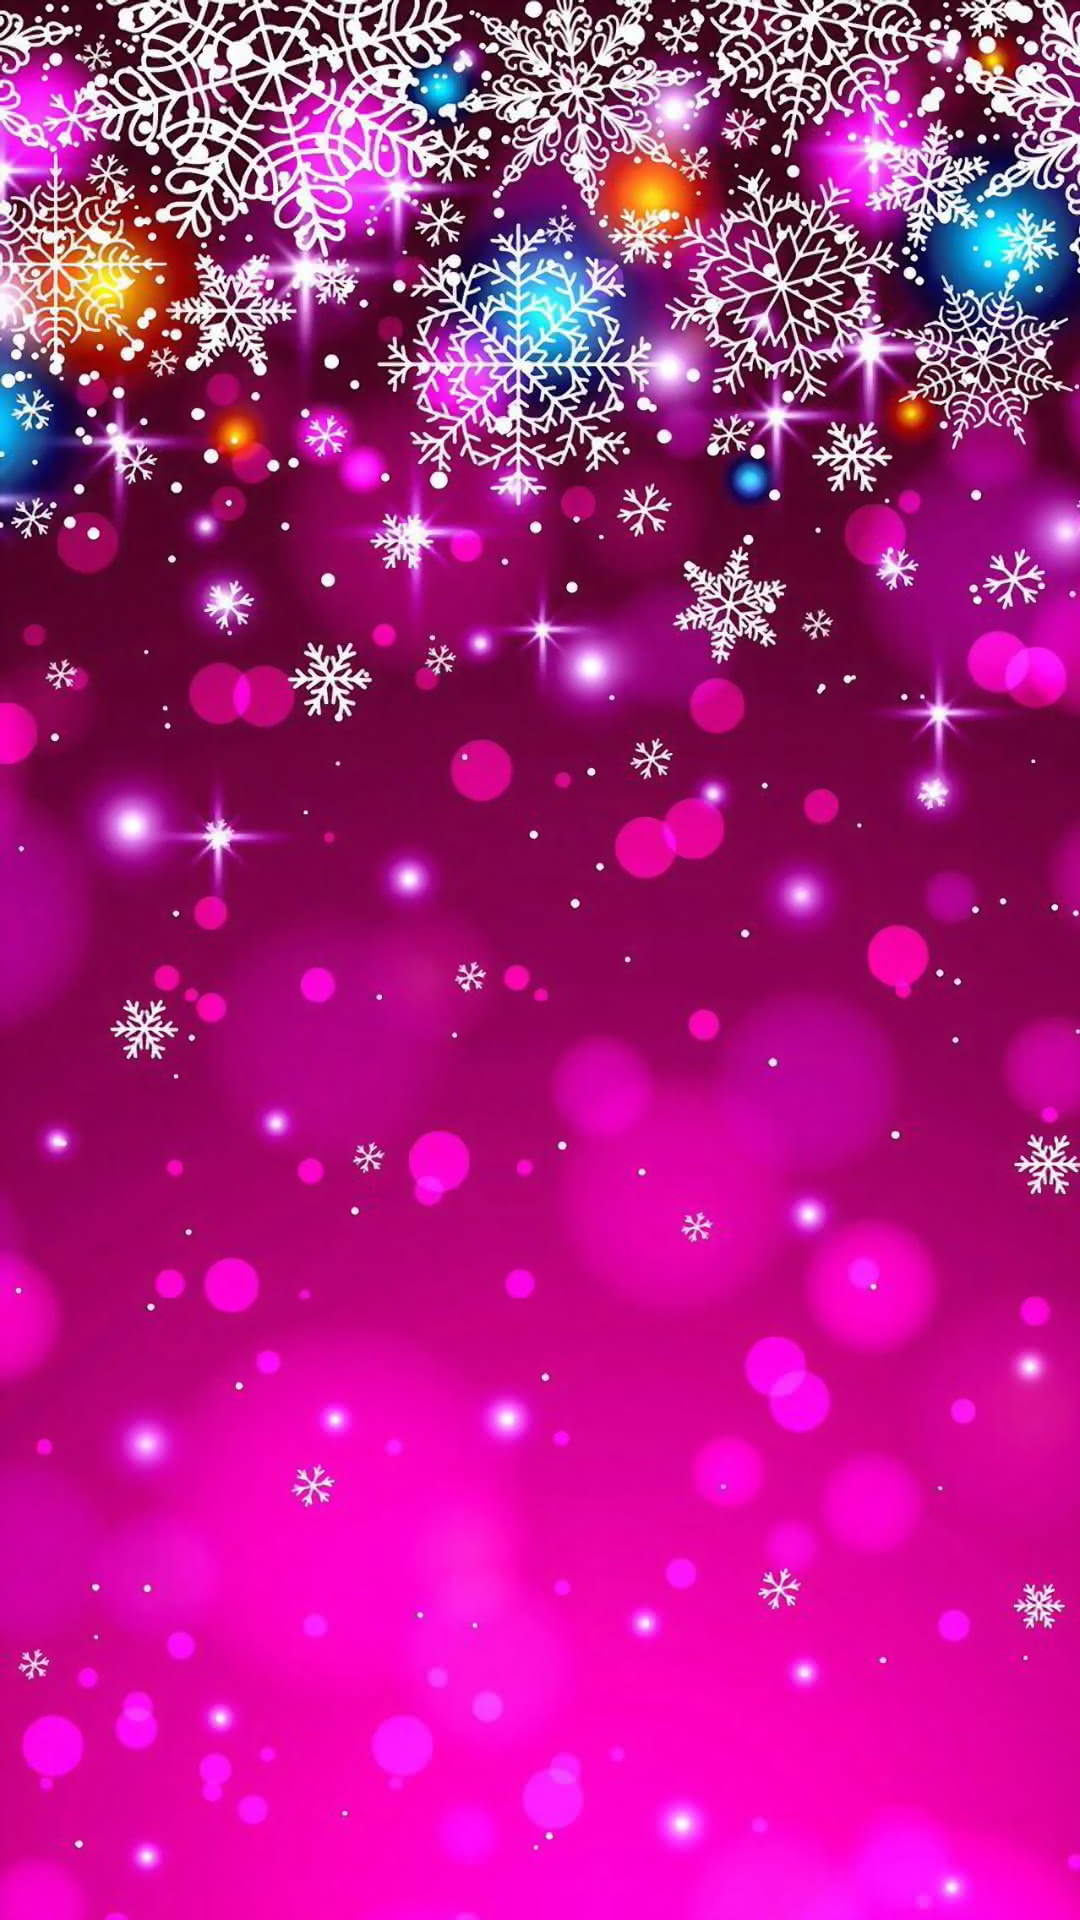 冬のキラキラ壁紙 ピンク Iphone Wallpapers